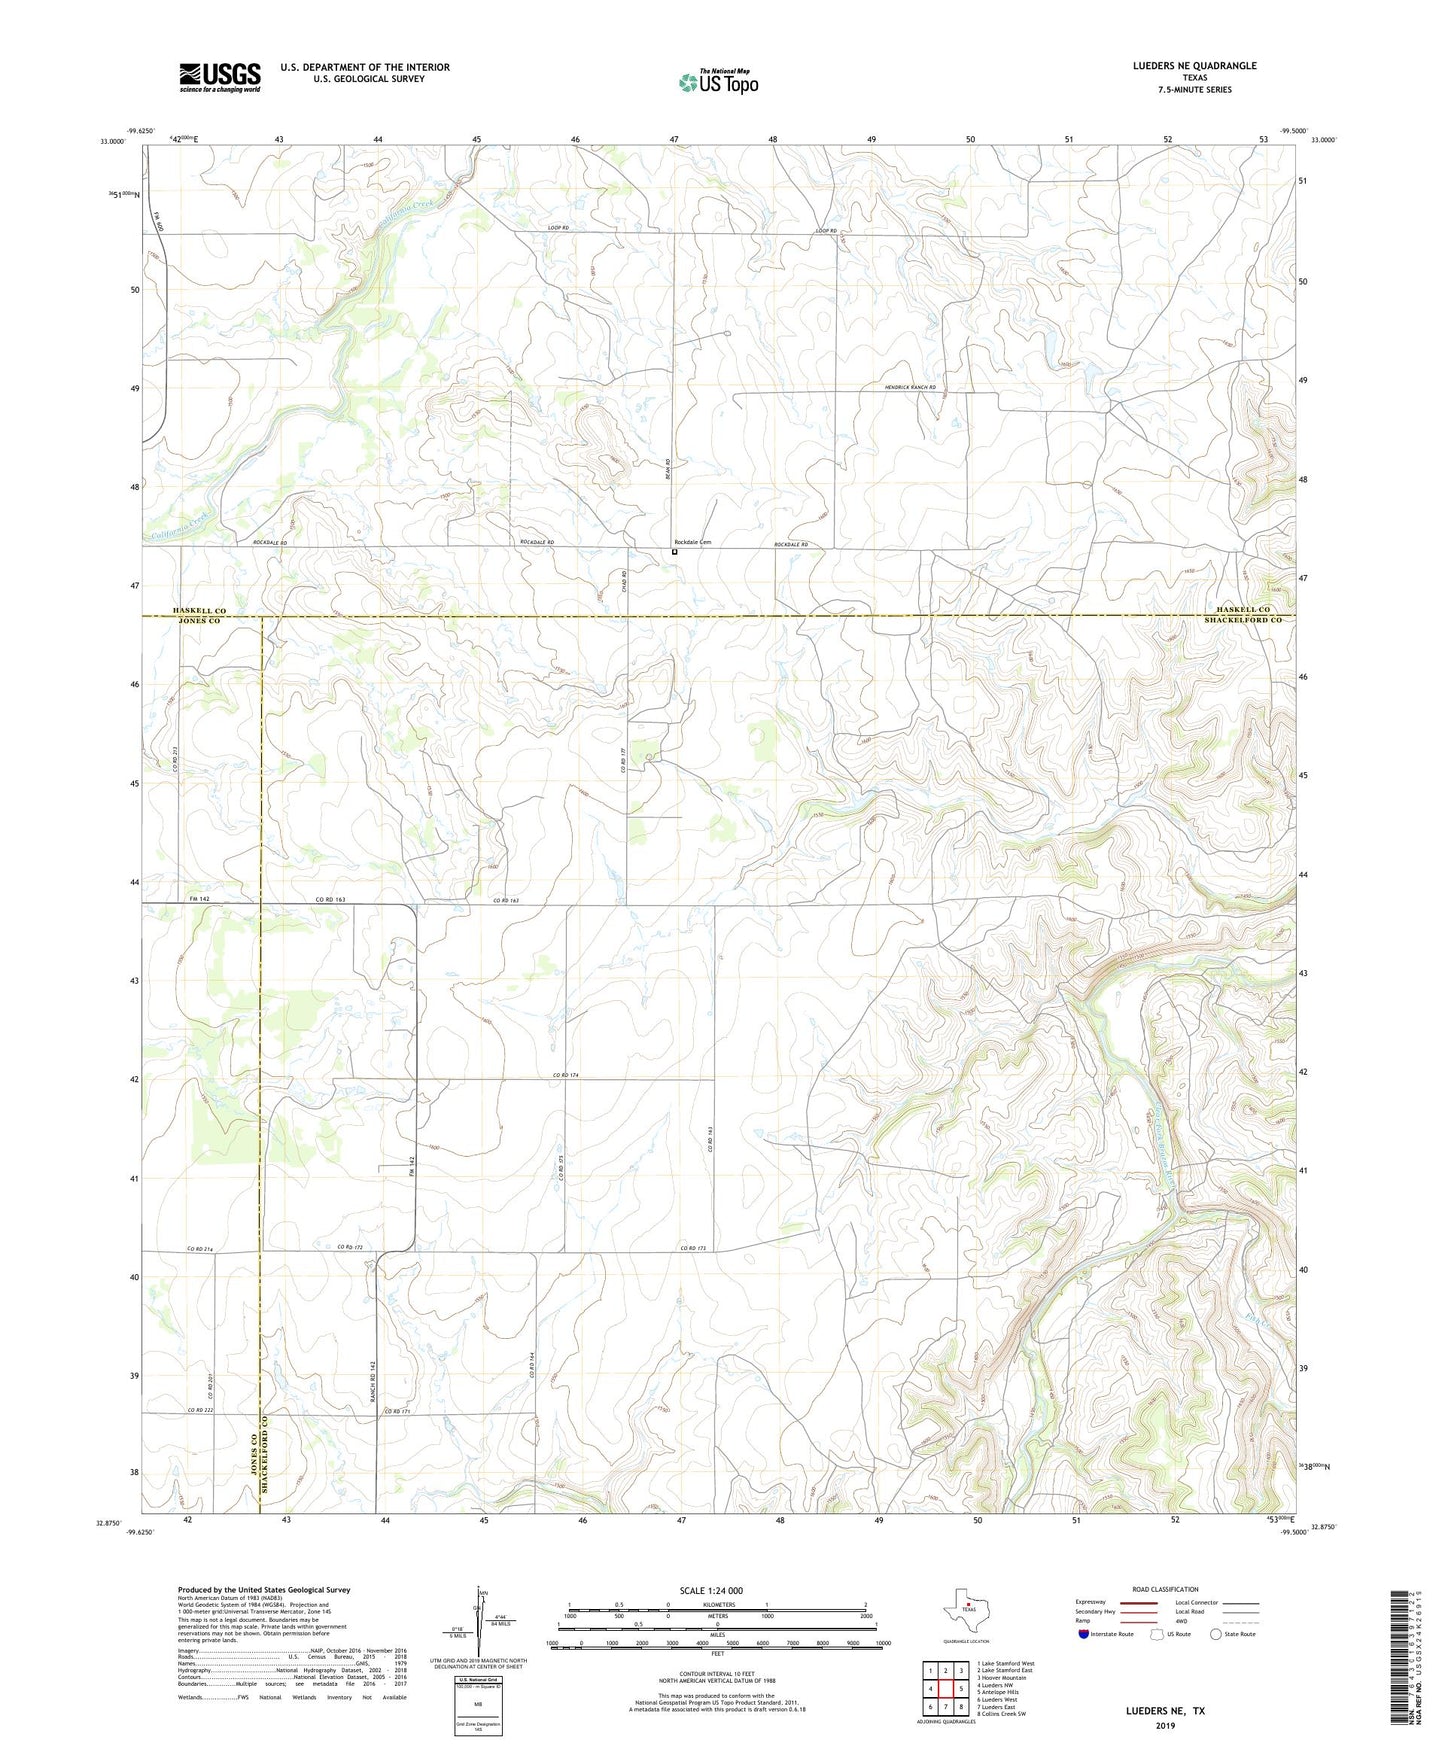 Lueders NE Texas US Topo Map Image